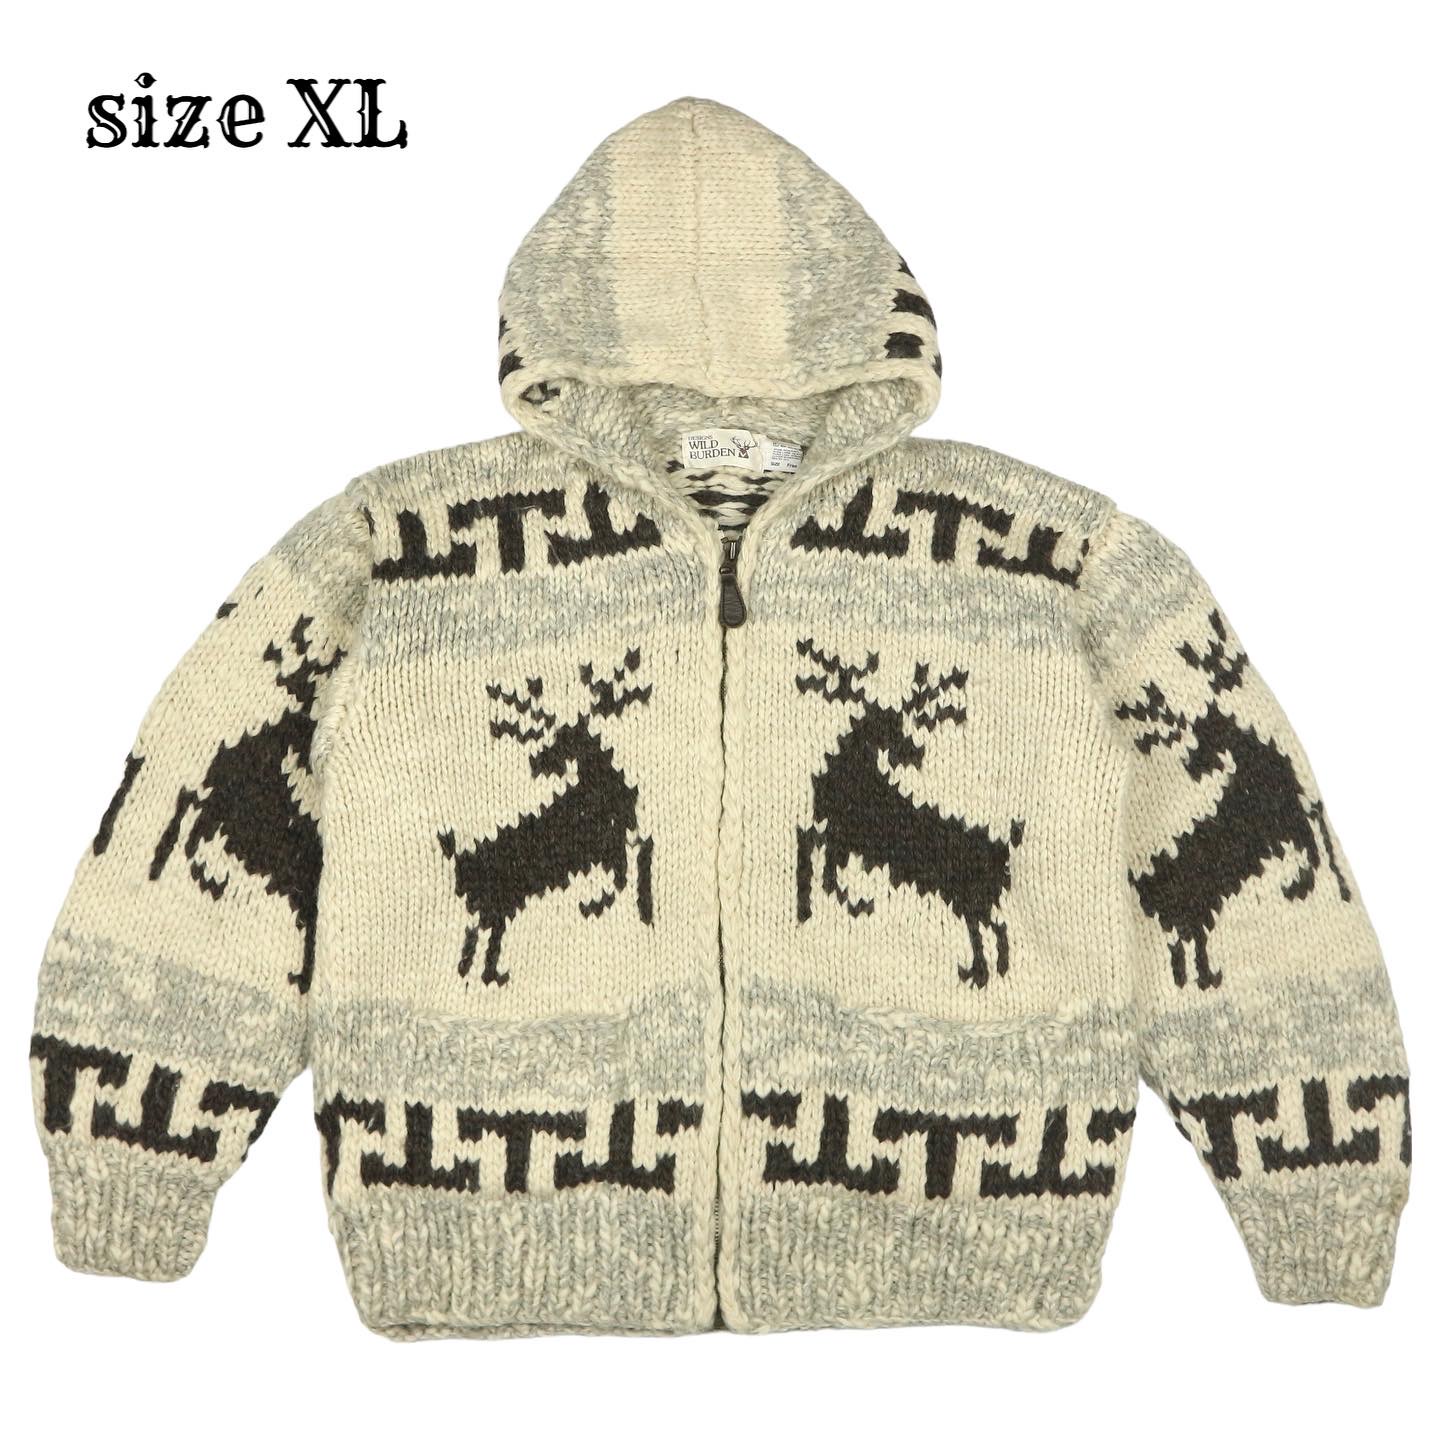 Wild Burden Heavy Wool Cowichan Sweater Size XL